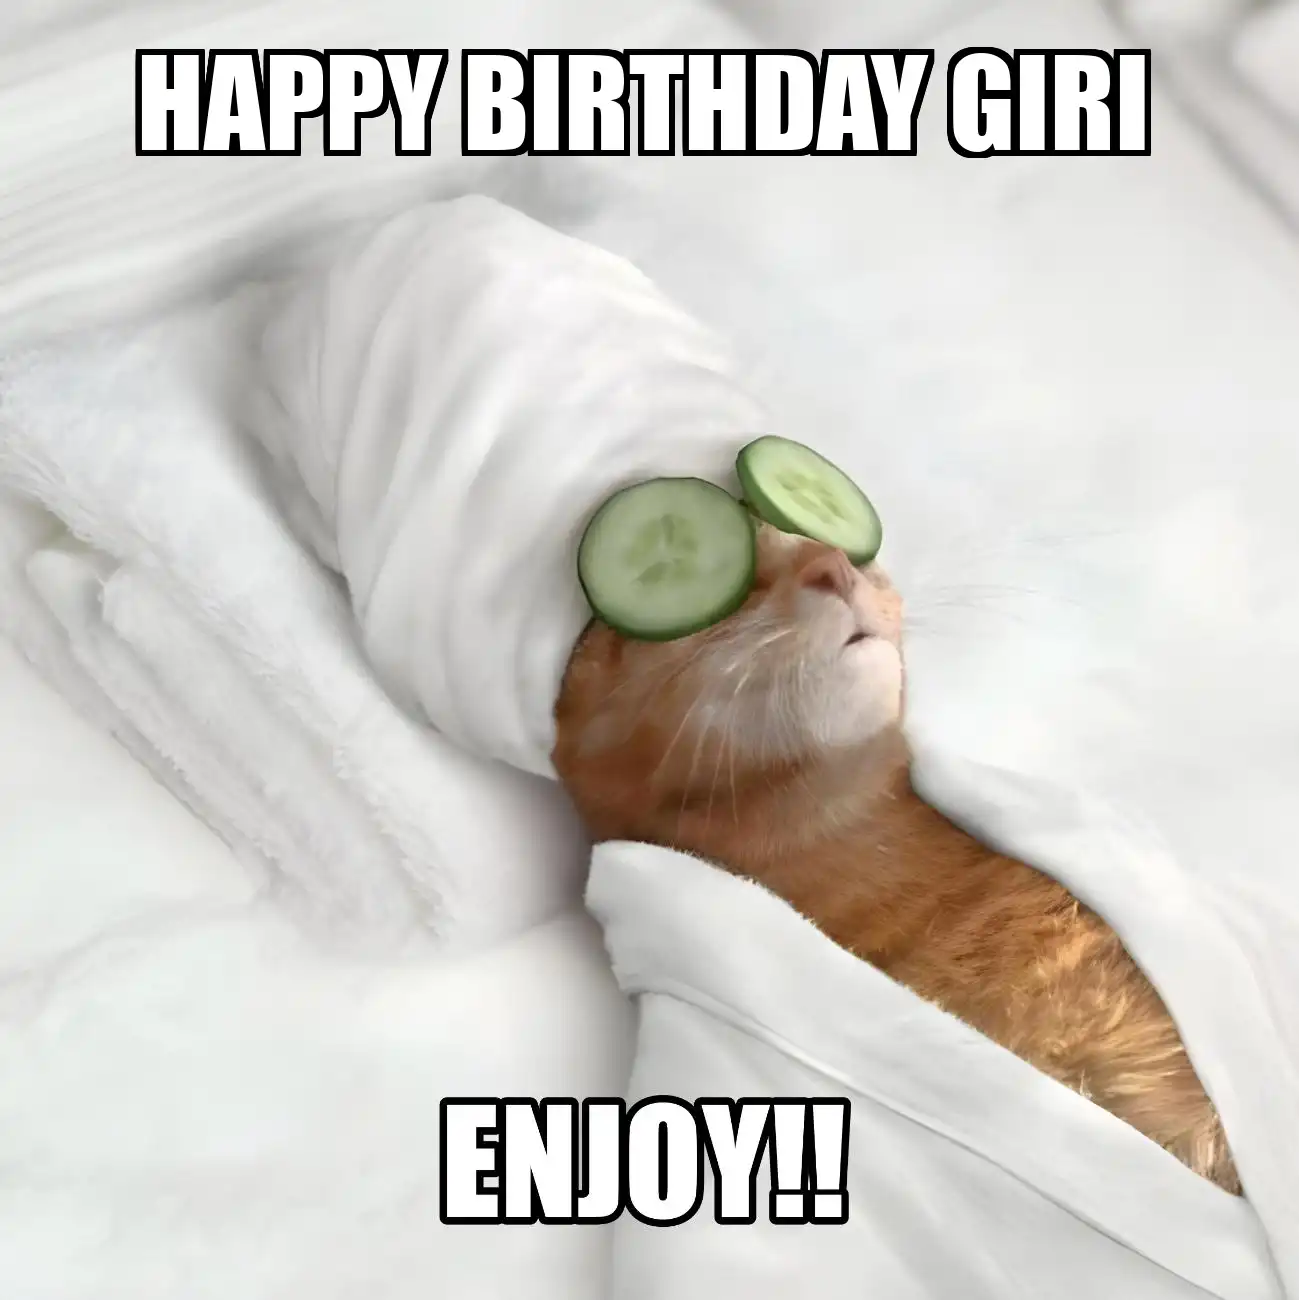 Happy Birthday Giri Enjoy Cat Meme